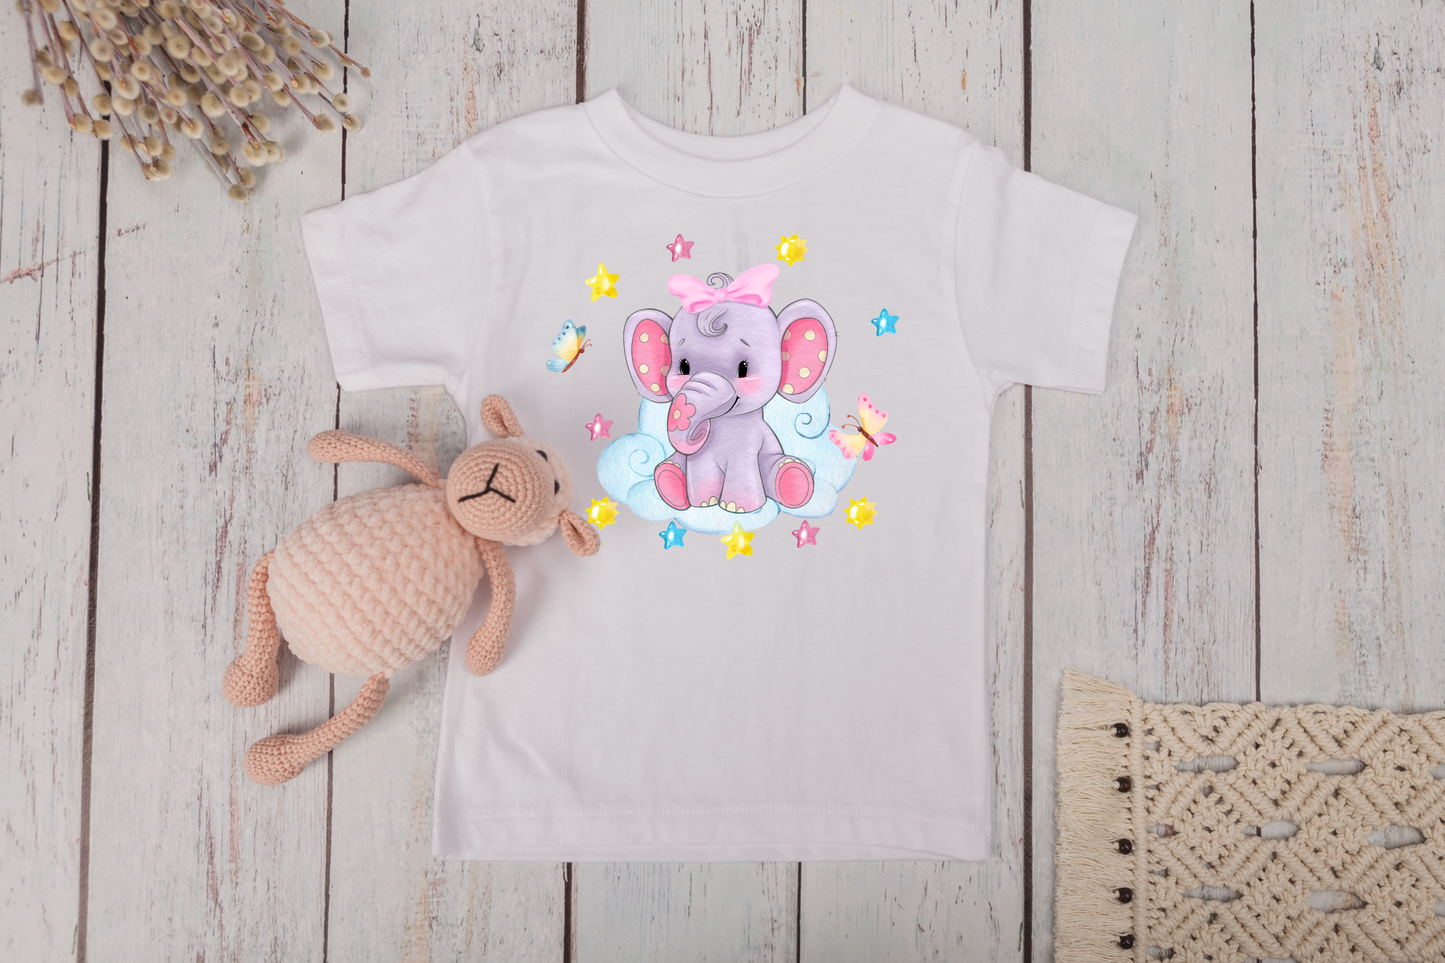 Cute Elephant Girls Toddler T-shirt/Onesie